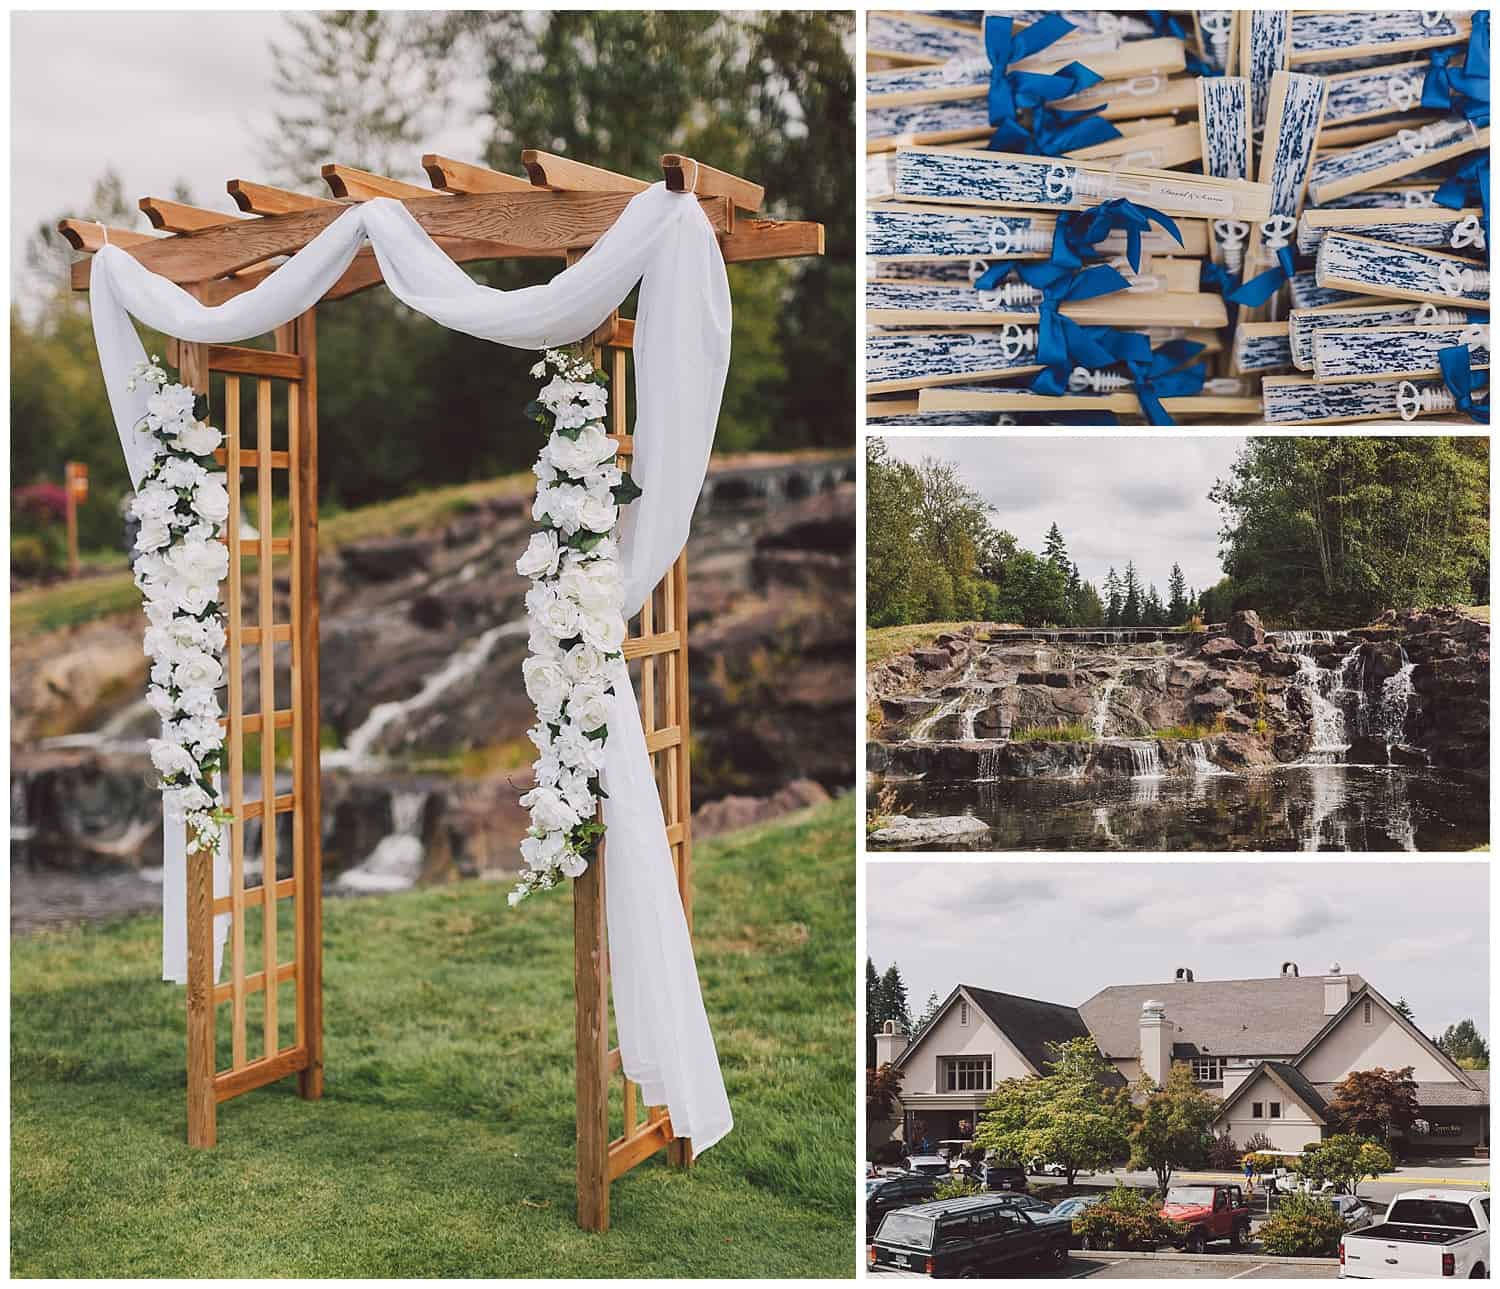 Echo Falls Golf Club wedding venue in Snohomish, WA by Kyle Goldie of Luma Weddings